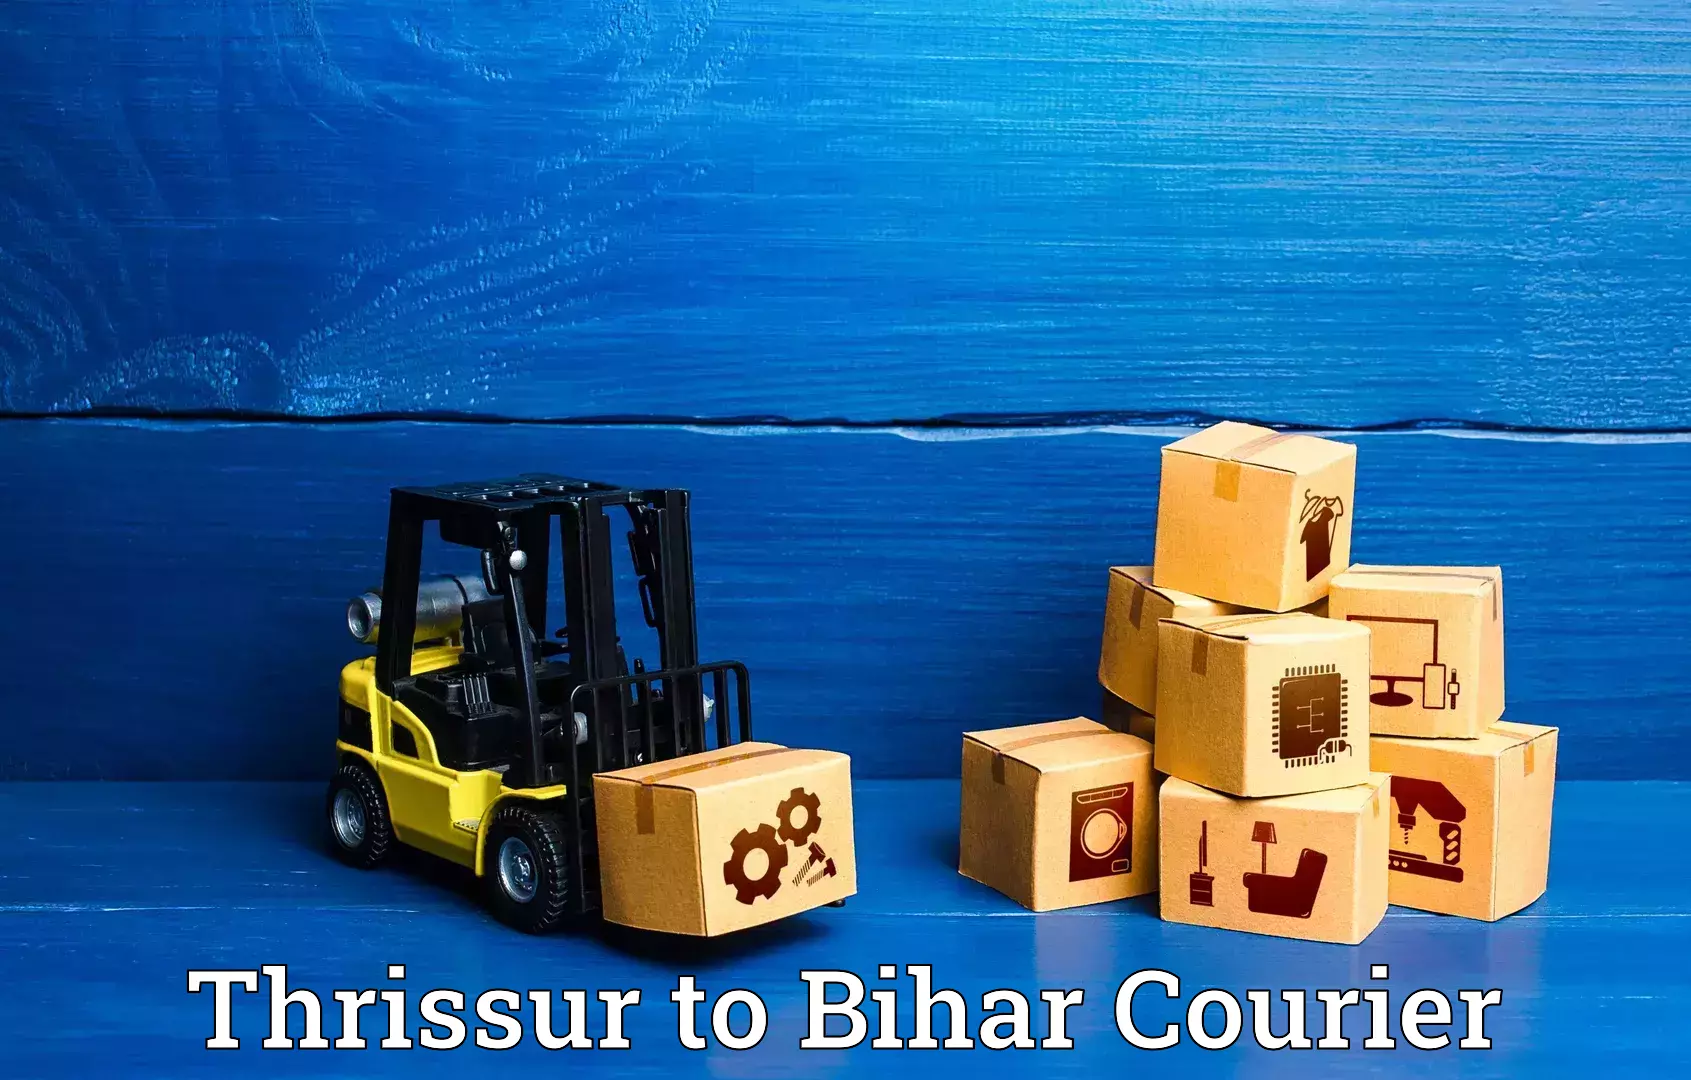 Luggage transport deals Thrissur to Bhorey